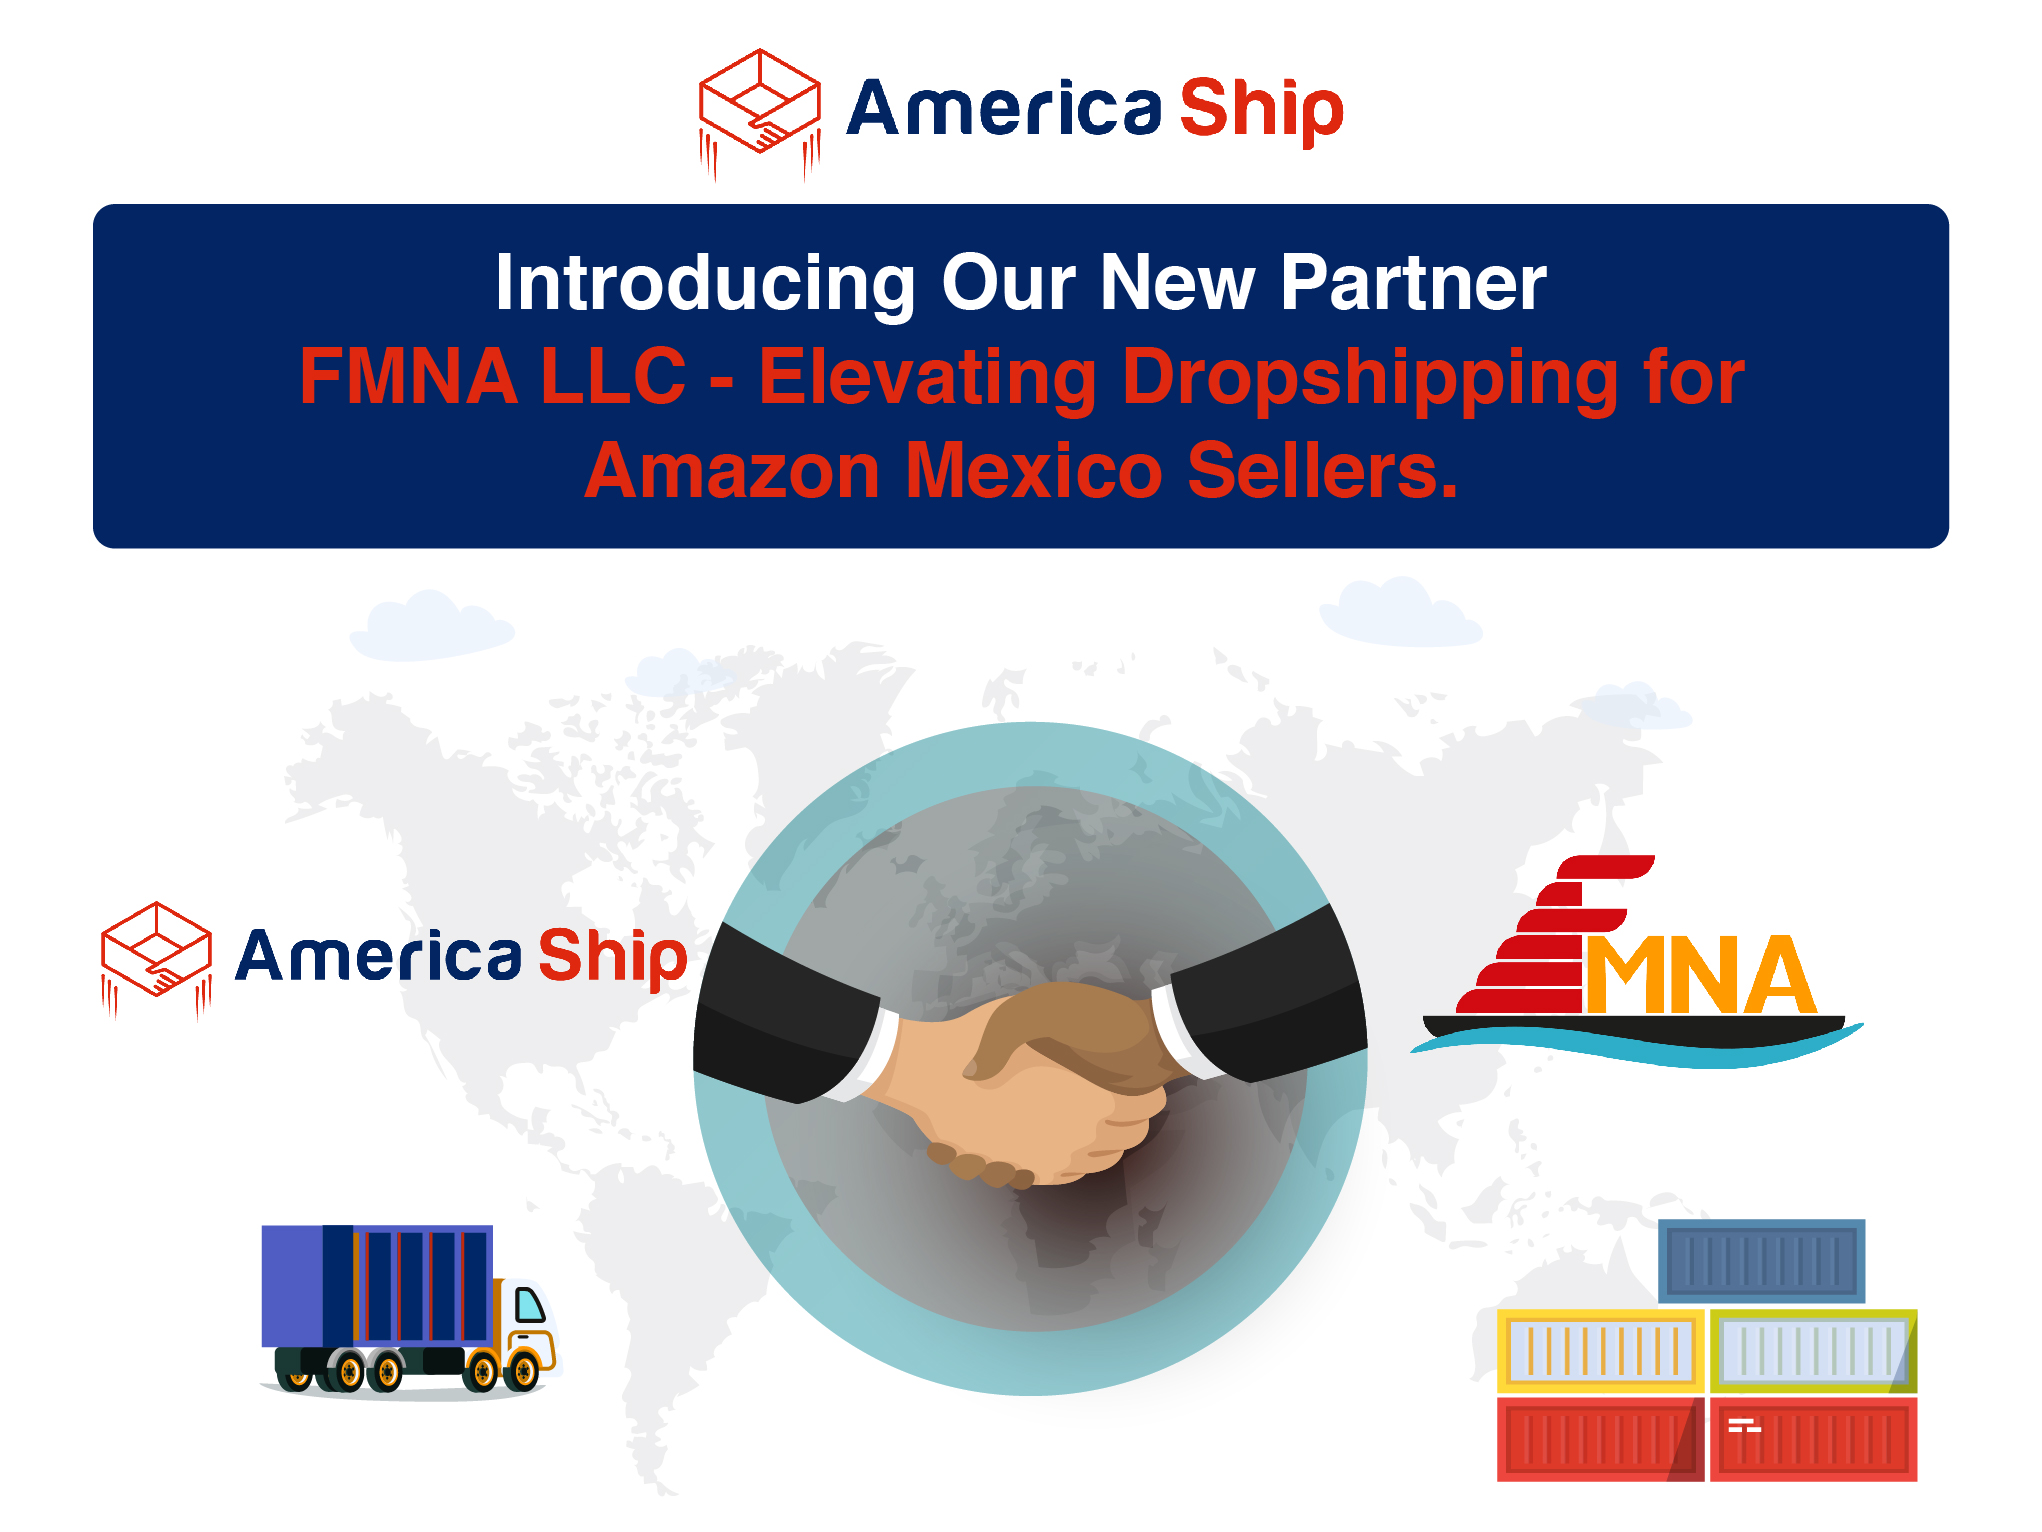 Presentamos a Nuestro Nuevo Socio: FMNA LLC - Elevating Dropshipping for Amazon Mexico Sellers.